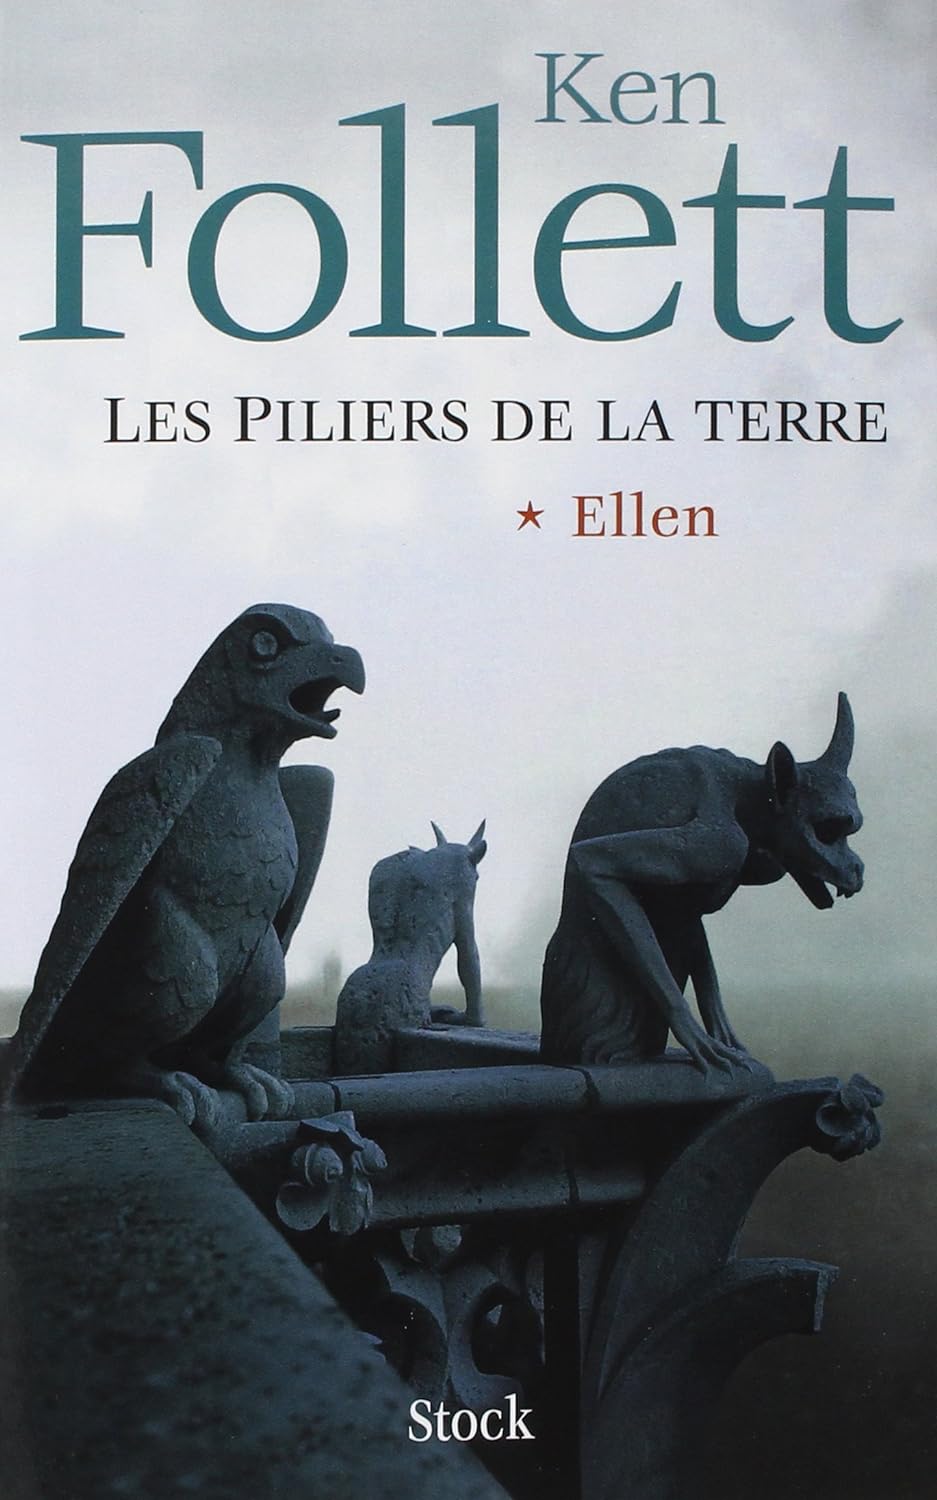 Livre ISBN 2234057841 Les piliers de la Terre # 1 (Ken Follett)